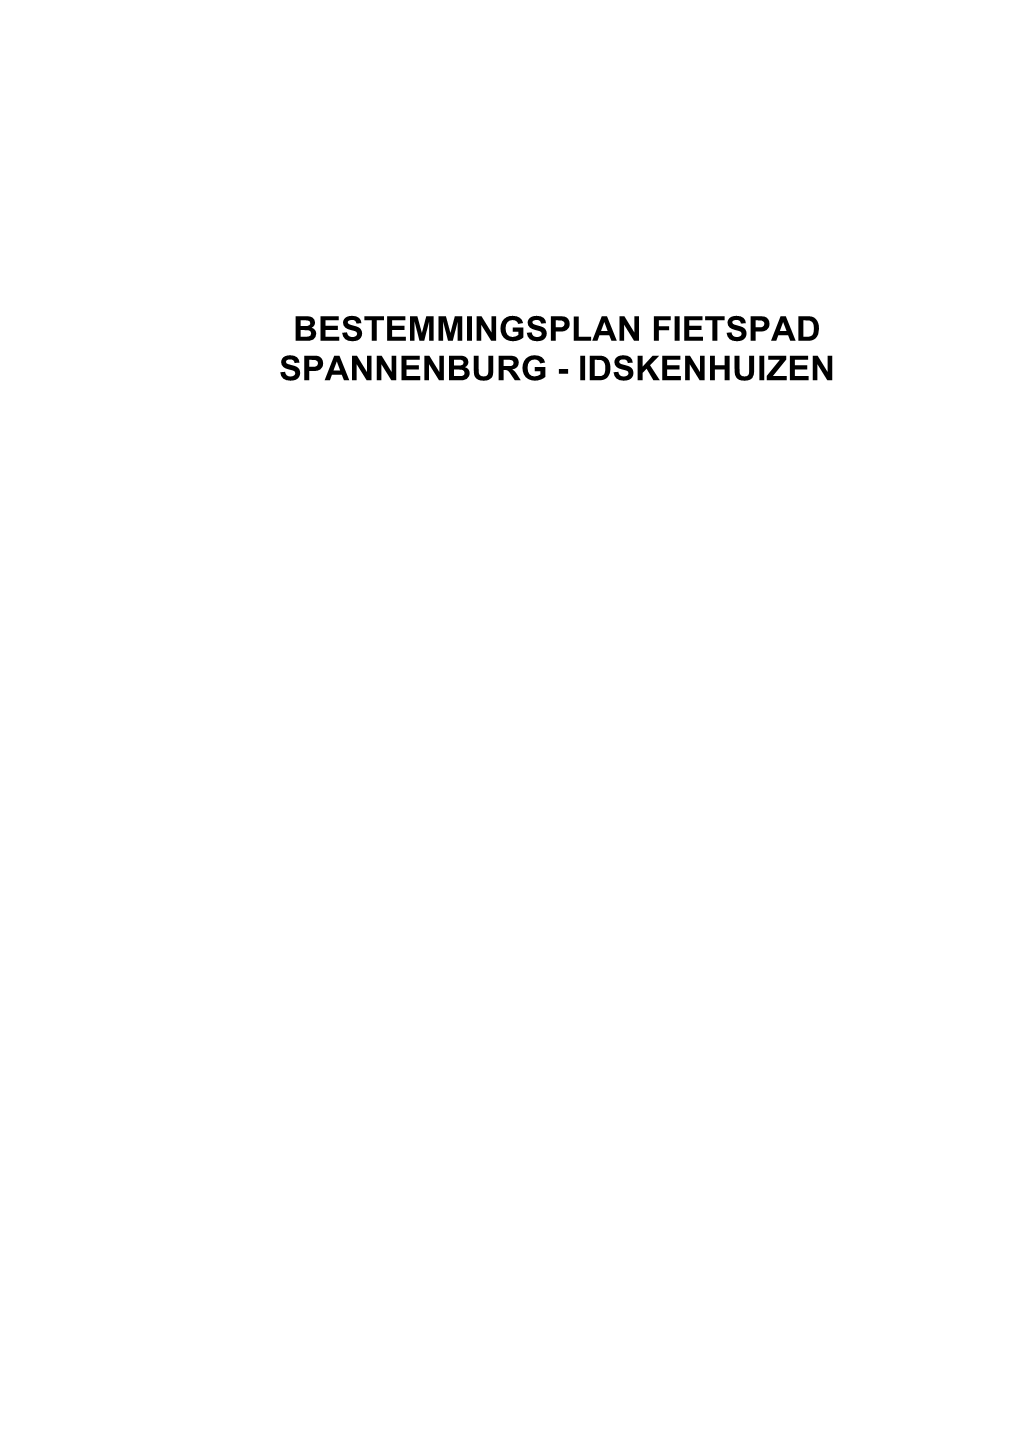 Bestemmingsplan Fietspad Spannenburg - Idskenhuizen